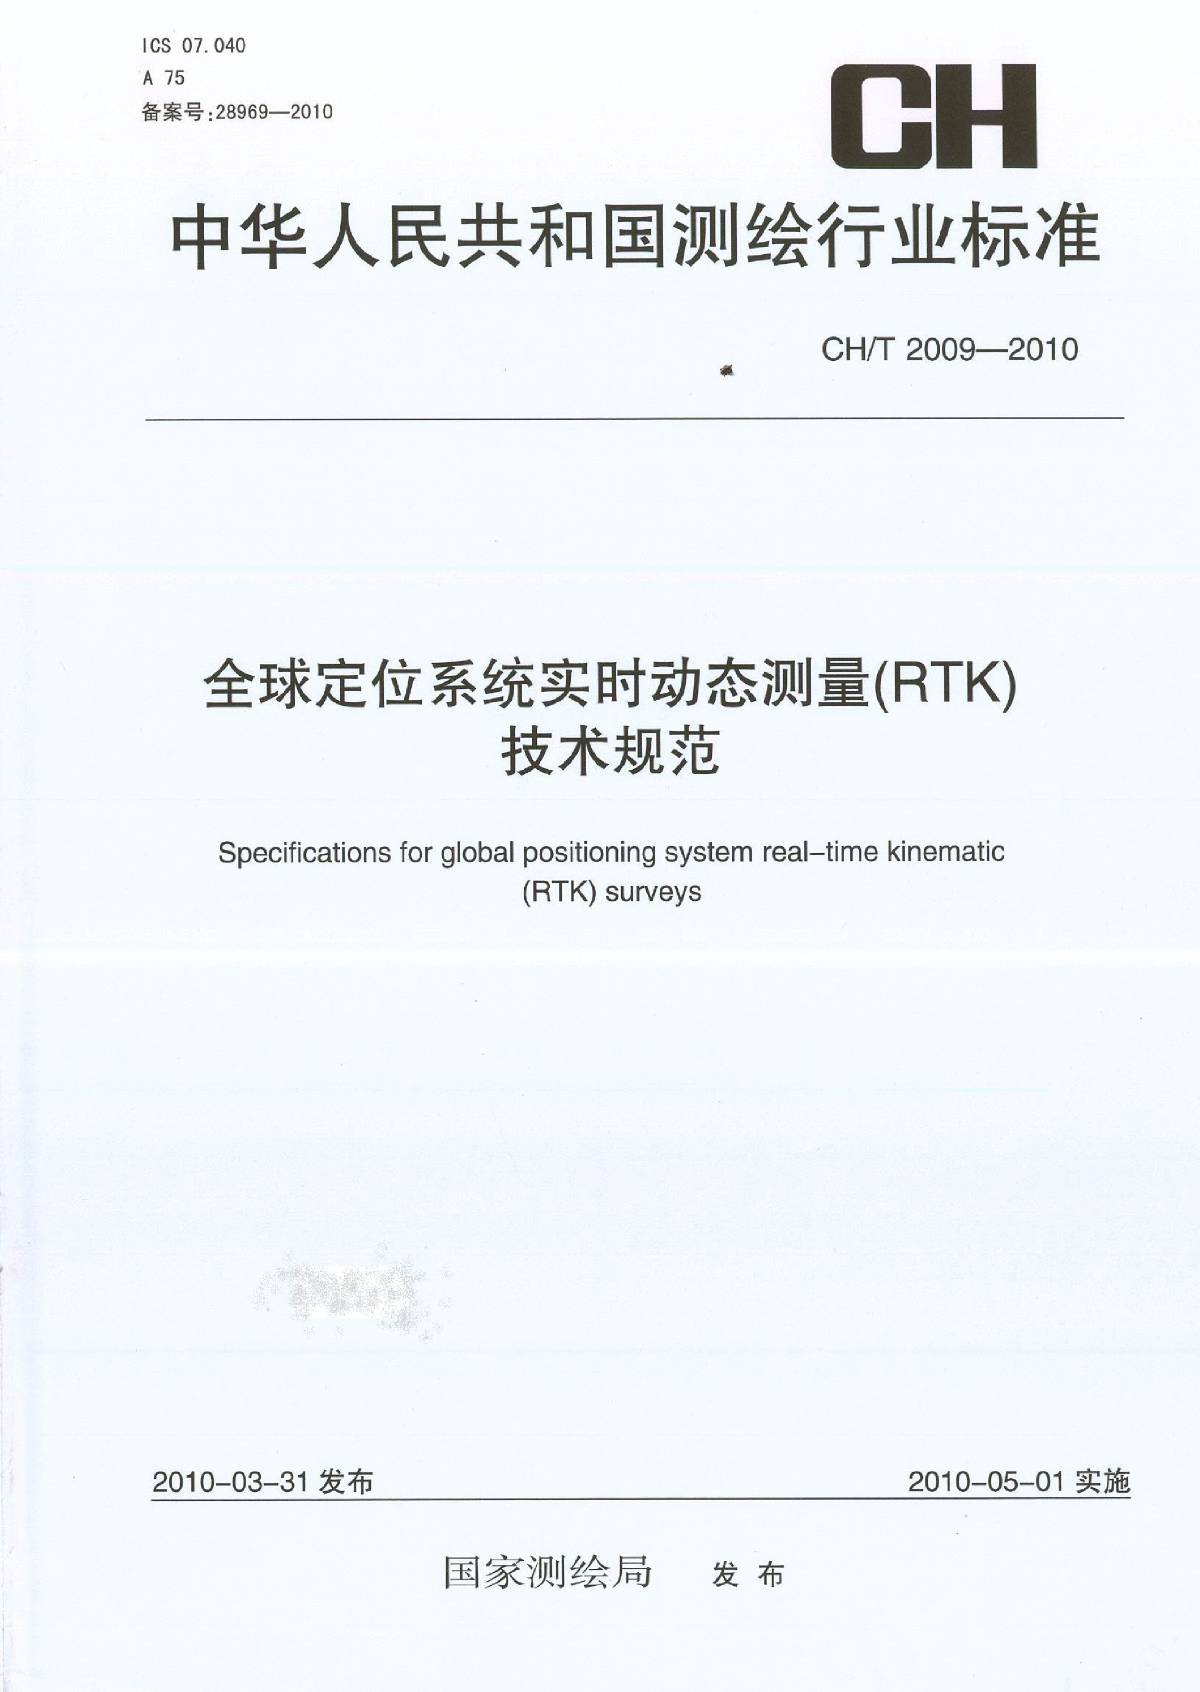 CHT2009-2010全球定位系统实时动态测量(RTK)技术规范